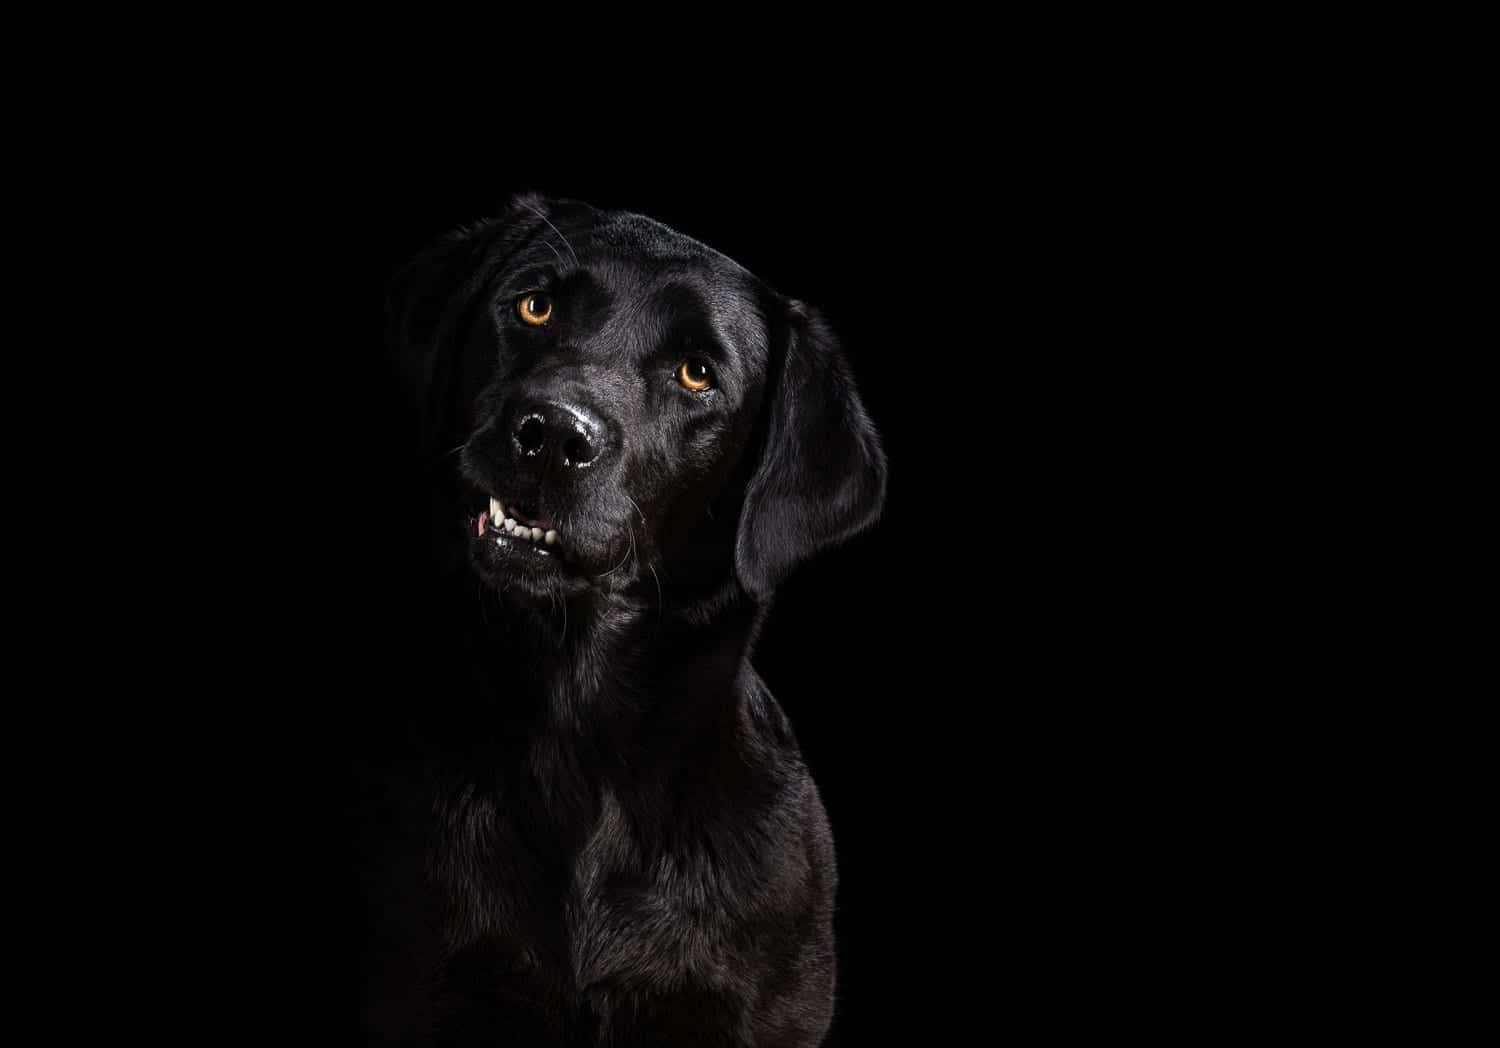 Hãy cùng chiêm ngưỡng những bức ảnh đầy bí ẩn và đẹp mắt của các chú chó được chụp trên nền đen. Tông màu đen sẽ giúp các pet của bạn trở nên cuốn hút và ấn tượng hơn bao giờ hết. Đừng bỏ lỡ cơ hội để đắm chìm trong thế giới ảo tuyệt đẹp cùng chúng tôi!